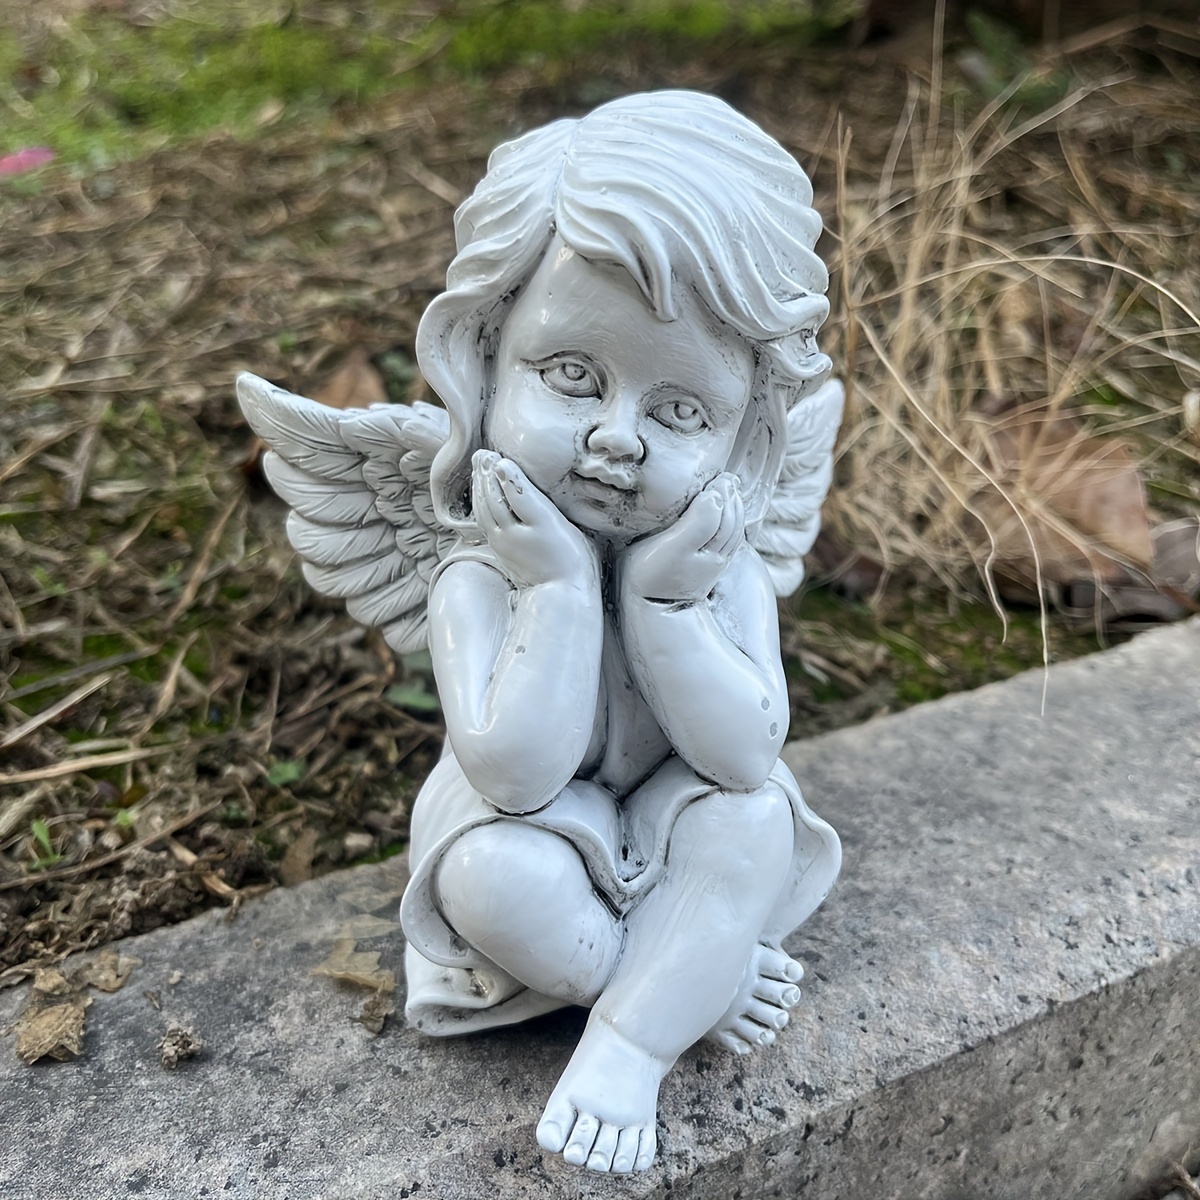 Memorial Cherub Baby Angel Statues Figurines Loves Cupid Angel